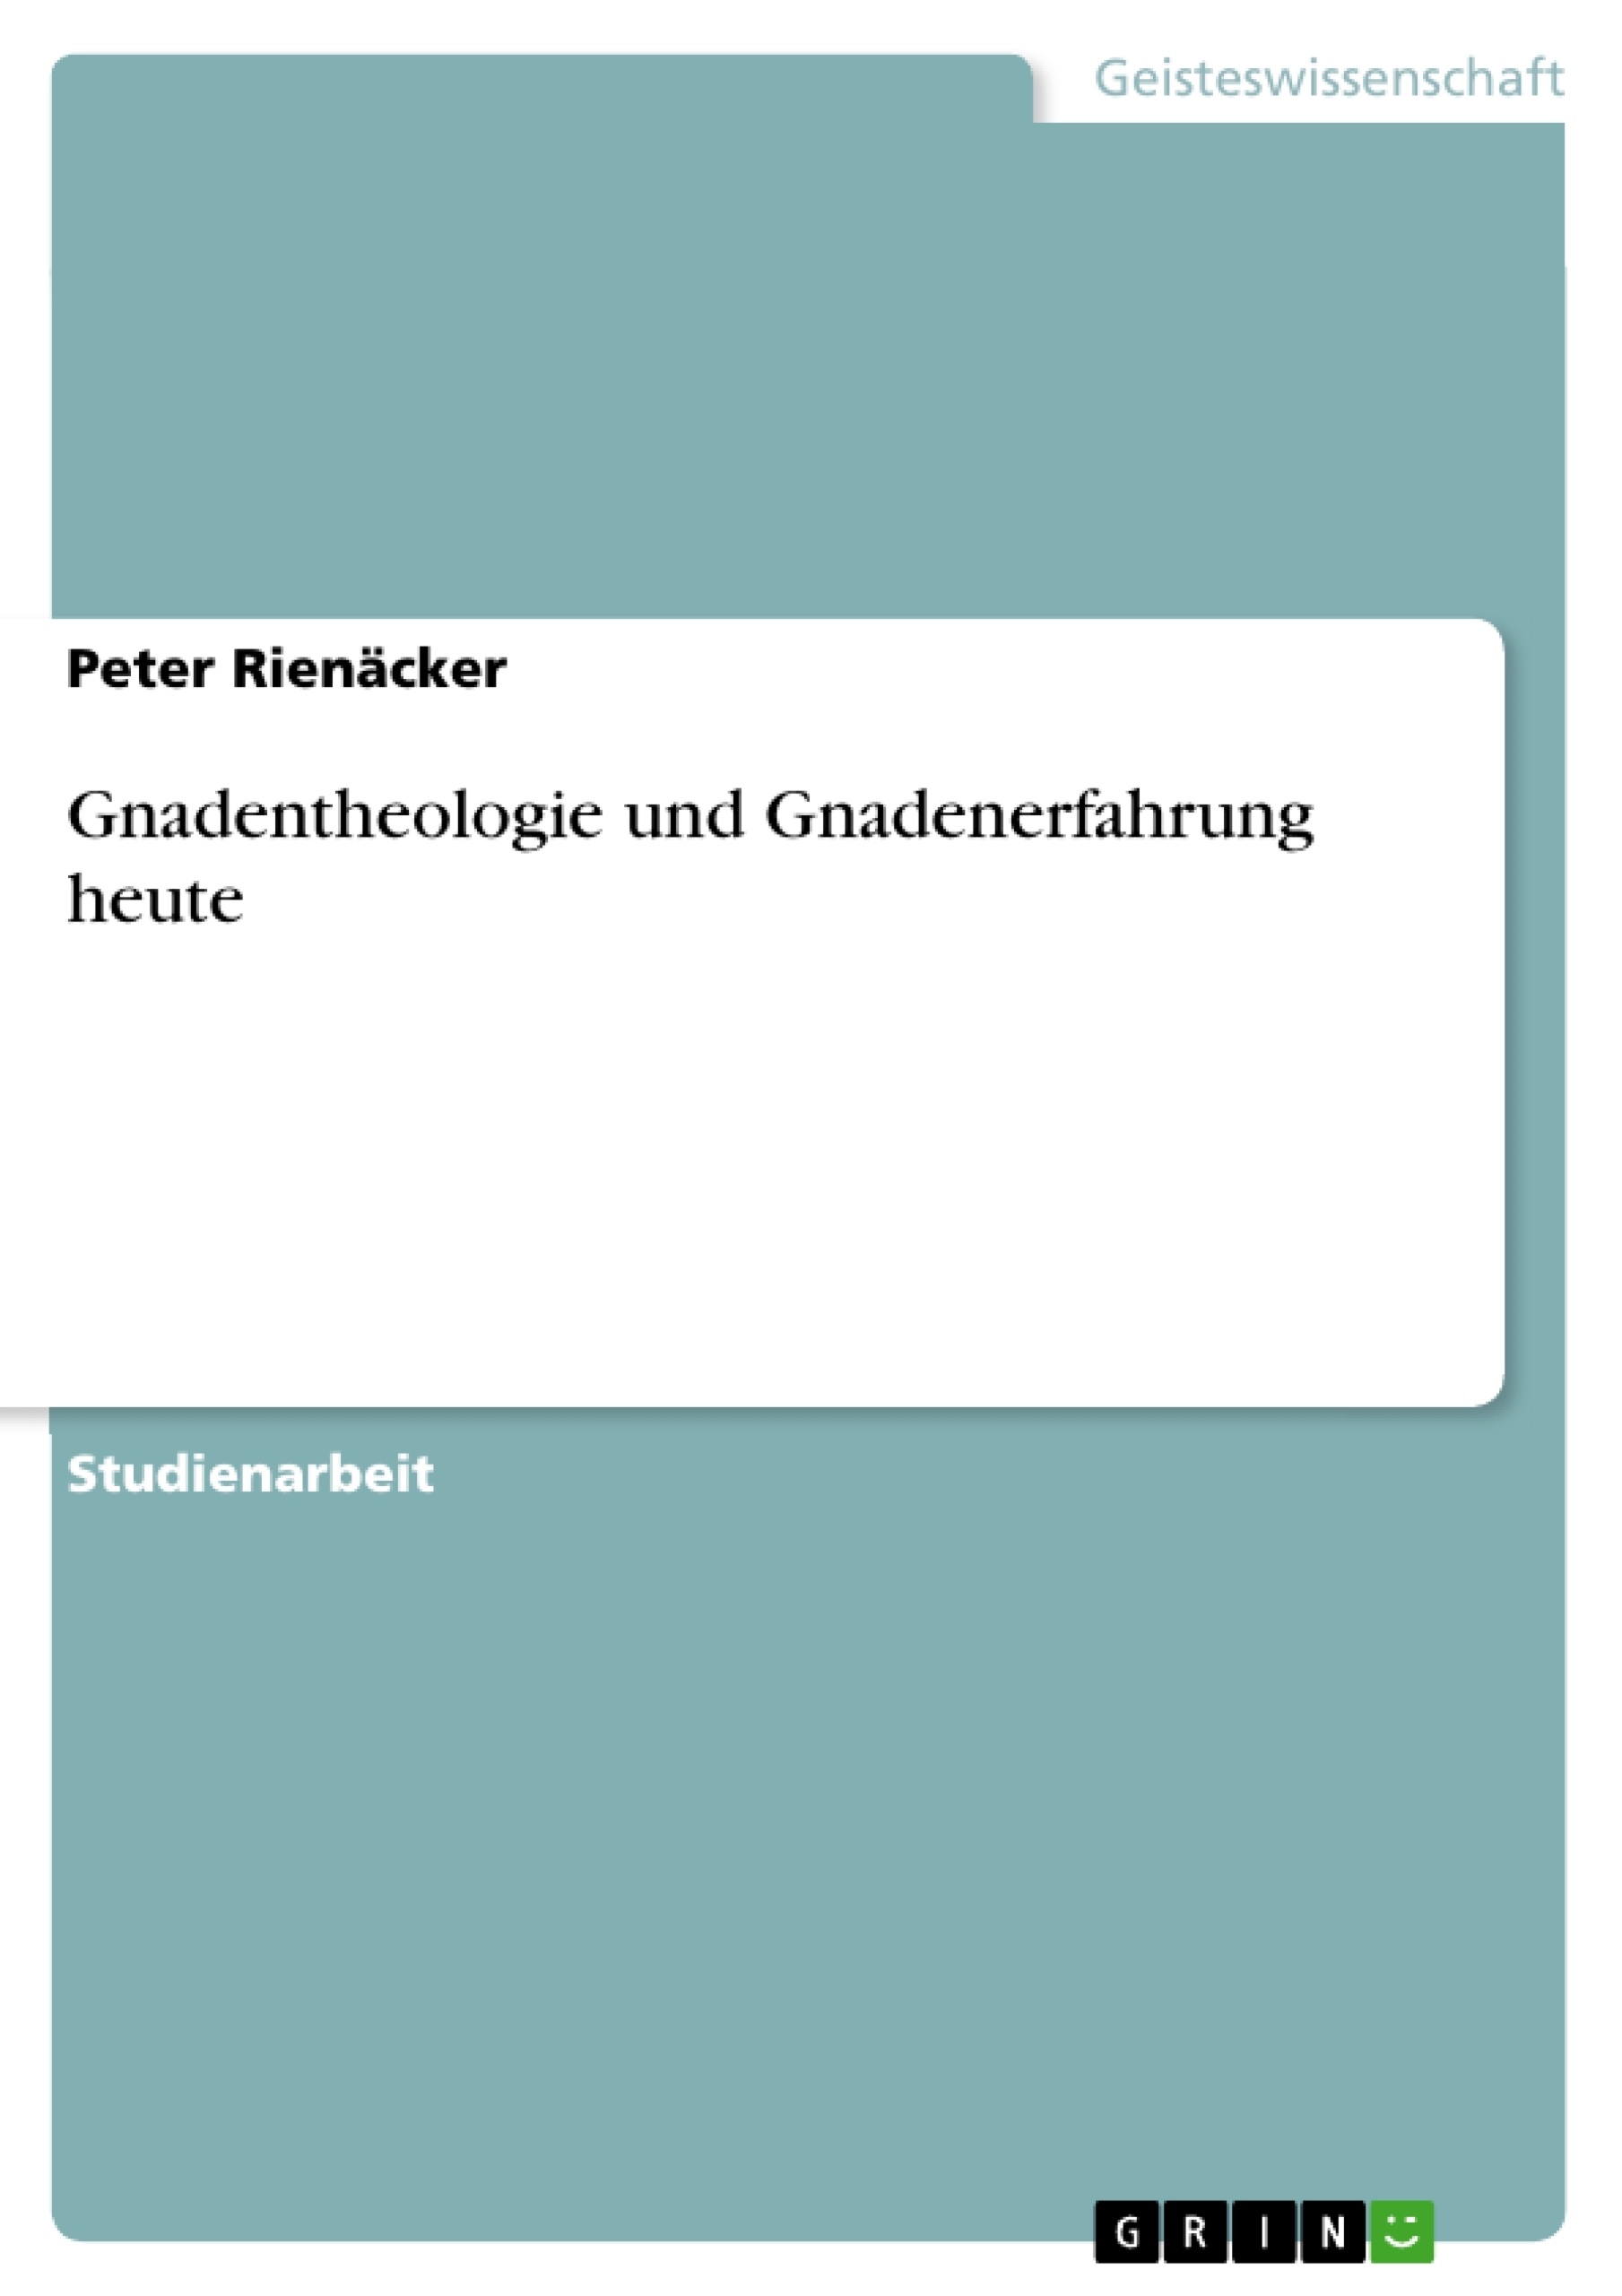 Titre: Gnadentheologie und Gnadenerfahrung heute